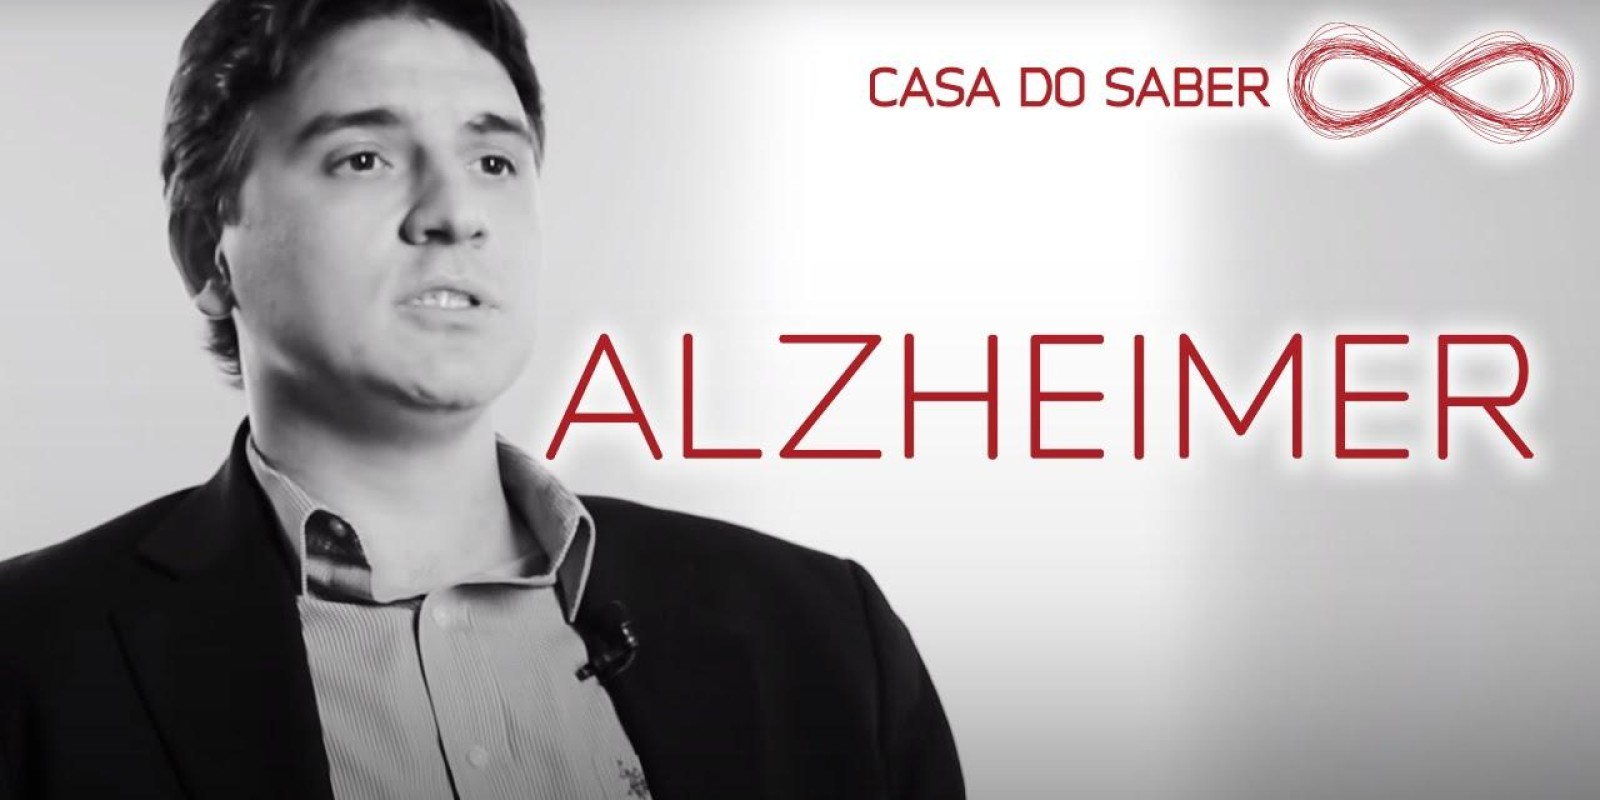  Alzheimer: a doença de uma sociedade | Fabiano Moulin